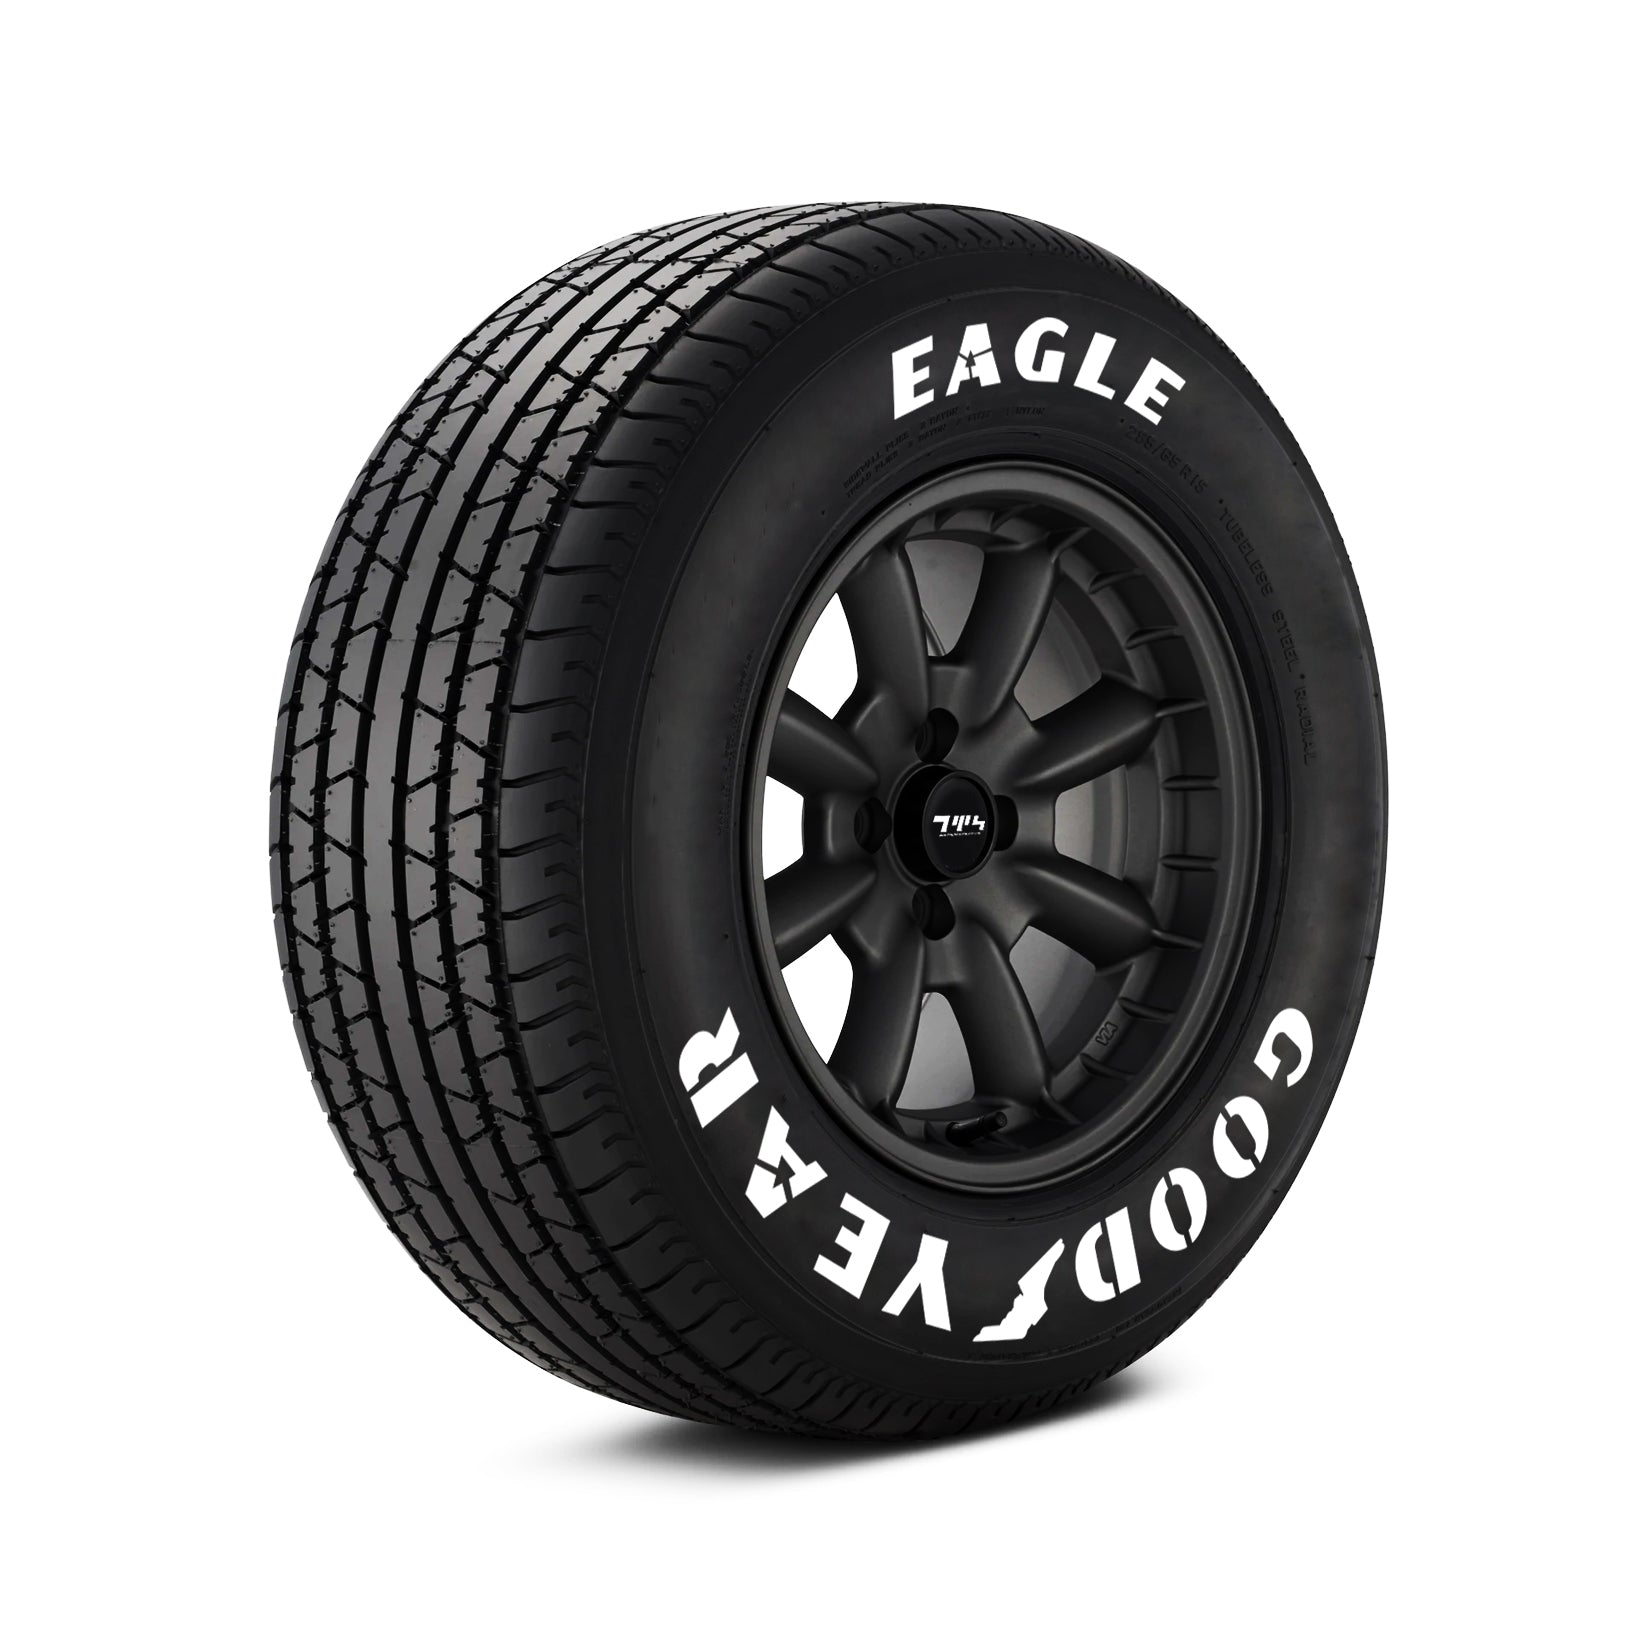 Billboard Goodyear Eagle Tyre Stickers Kit